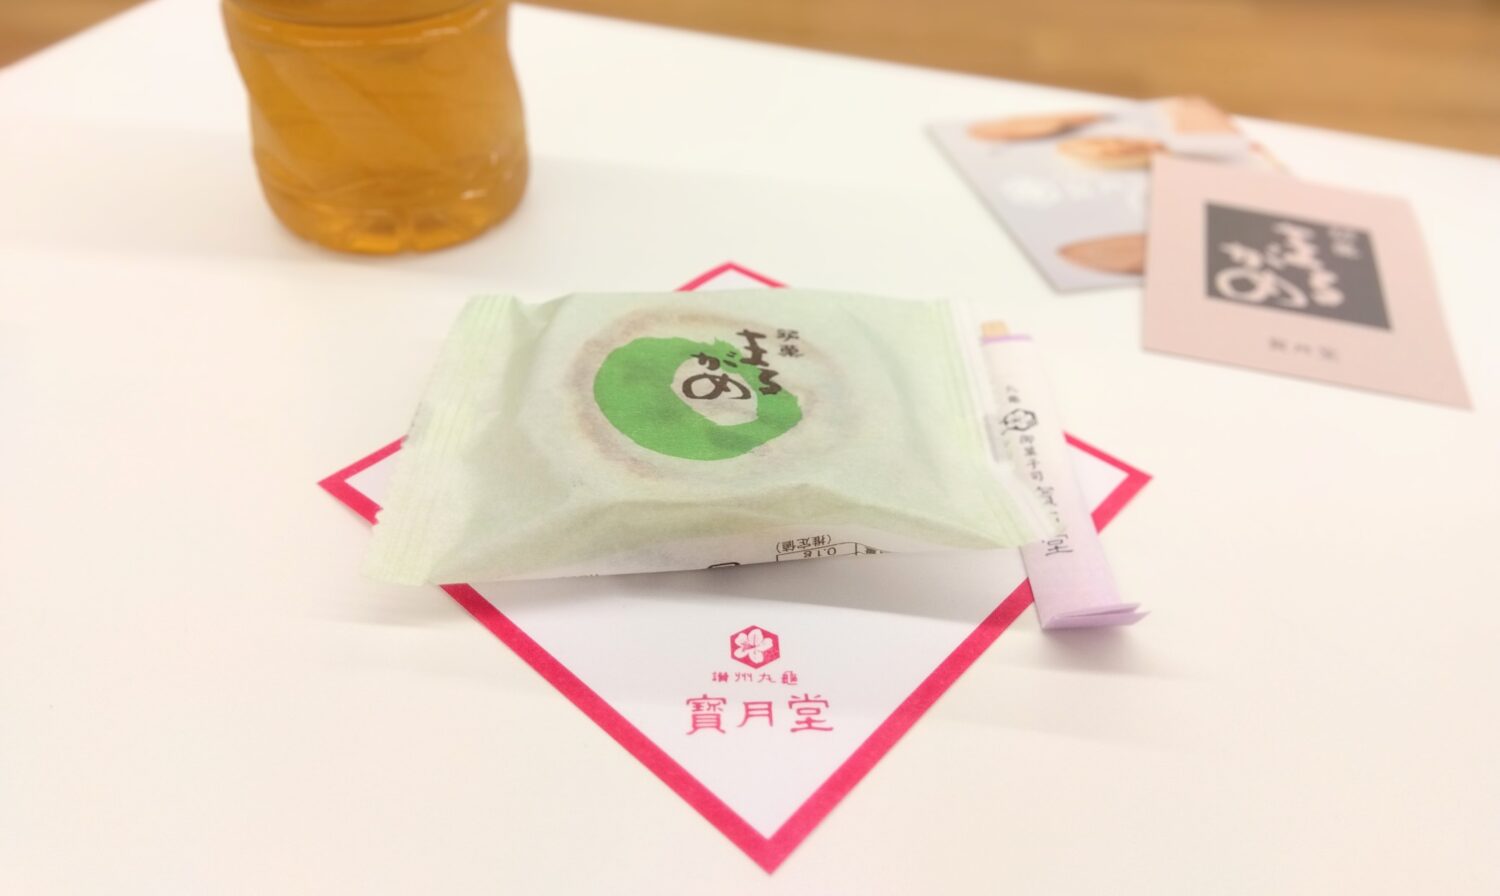 和菓子の銘菓、寶月堂「まるがめ」の画像です。